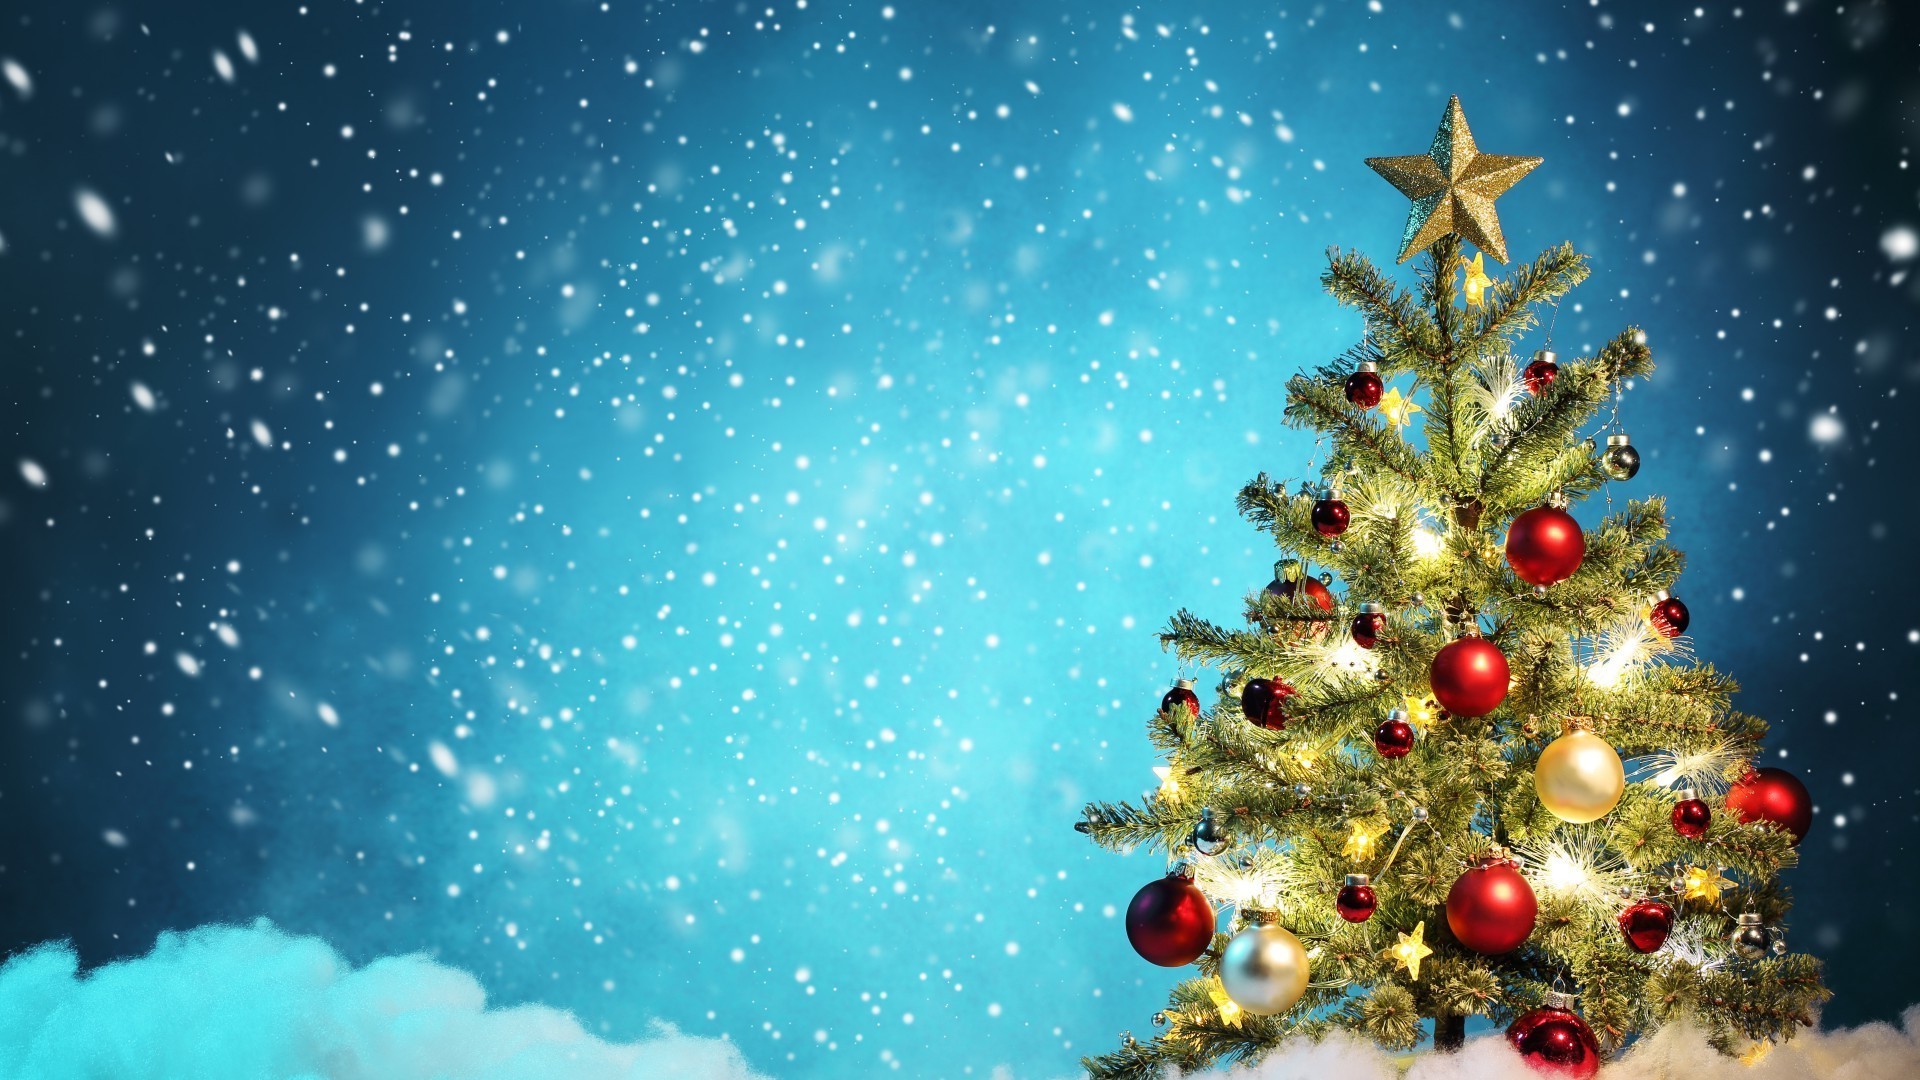 новый год рождество зима снег мерри снежинка блестят светит праздник ева мяч украшения приветствие сезон игристое пихта карта мороз яркий рабочего стола